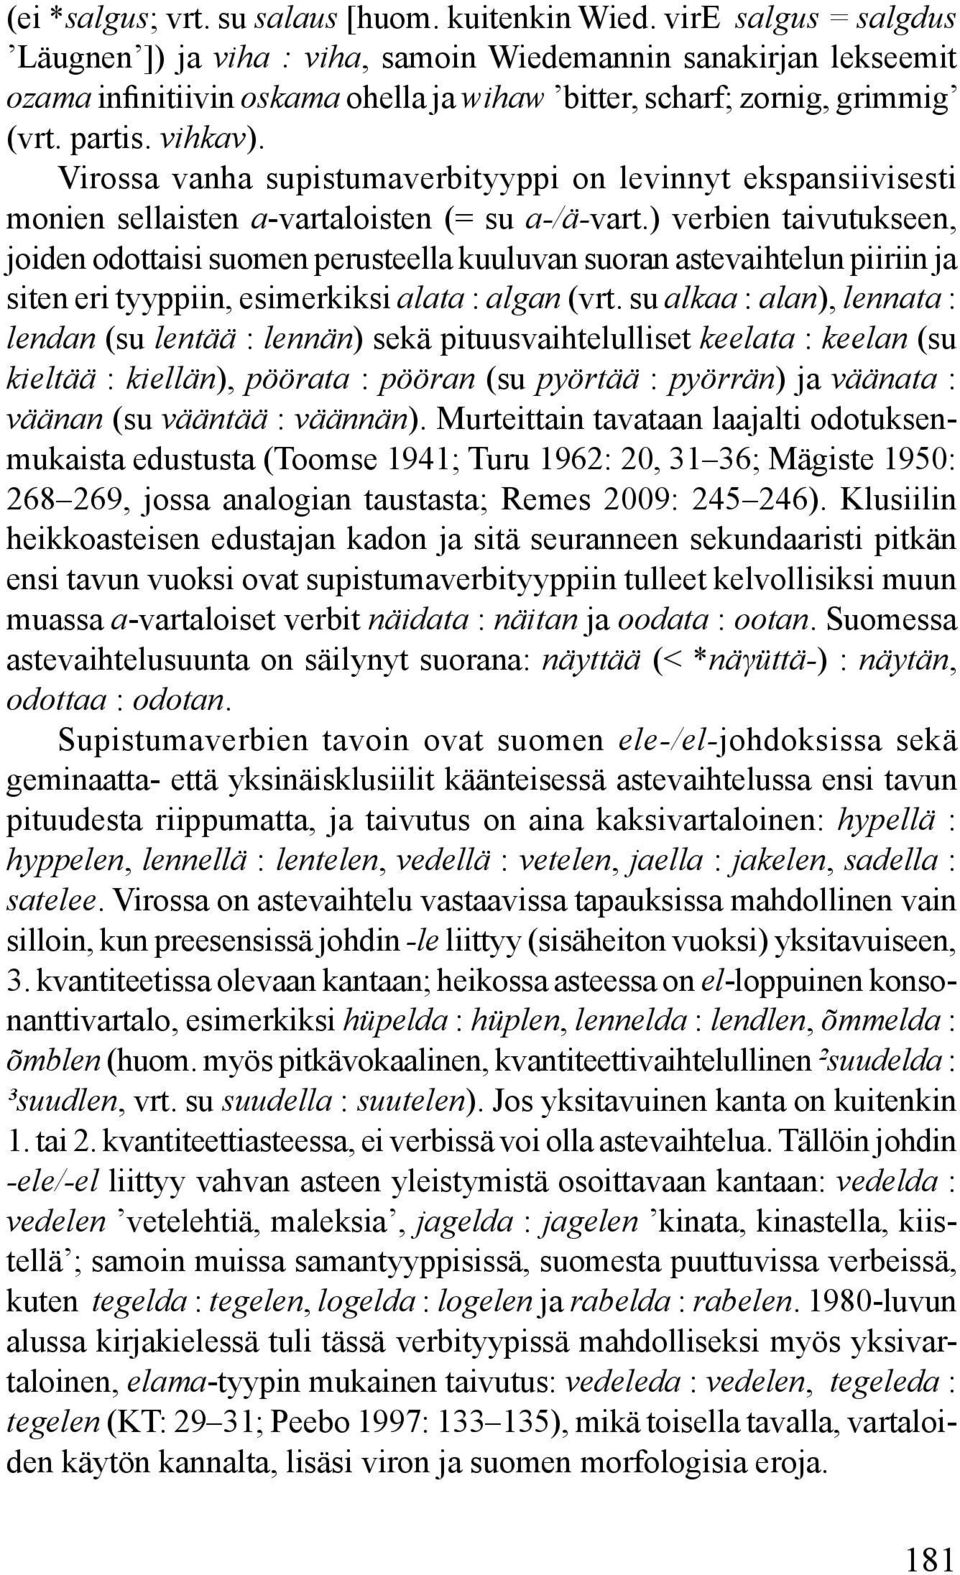 Virossa vanha supistumaverbityyppi on levinnyt ekspansiivisesti monien sellaisten a-vartaloisten (= su a-/ä-vart.